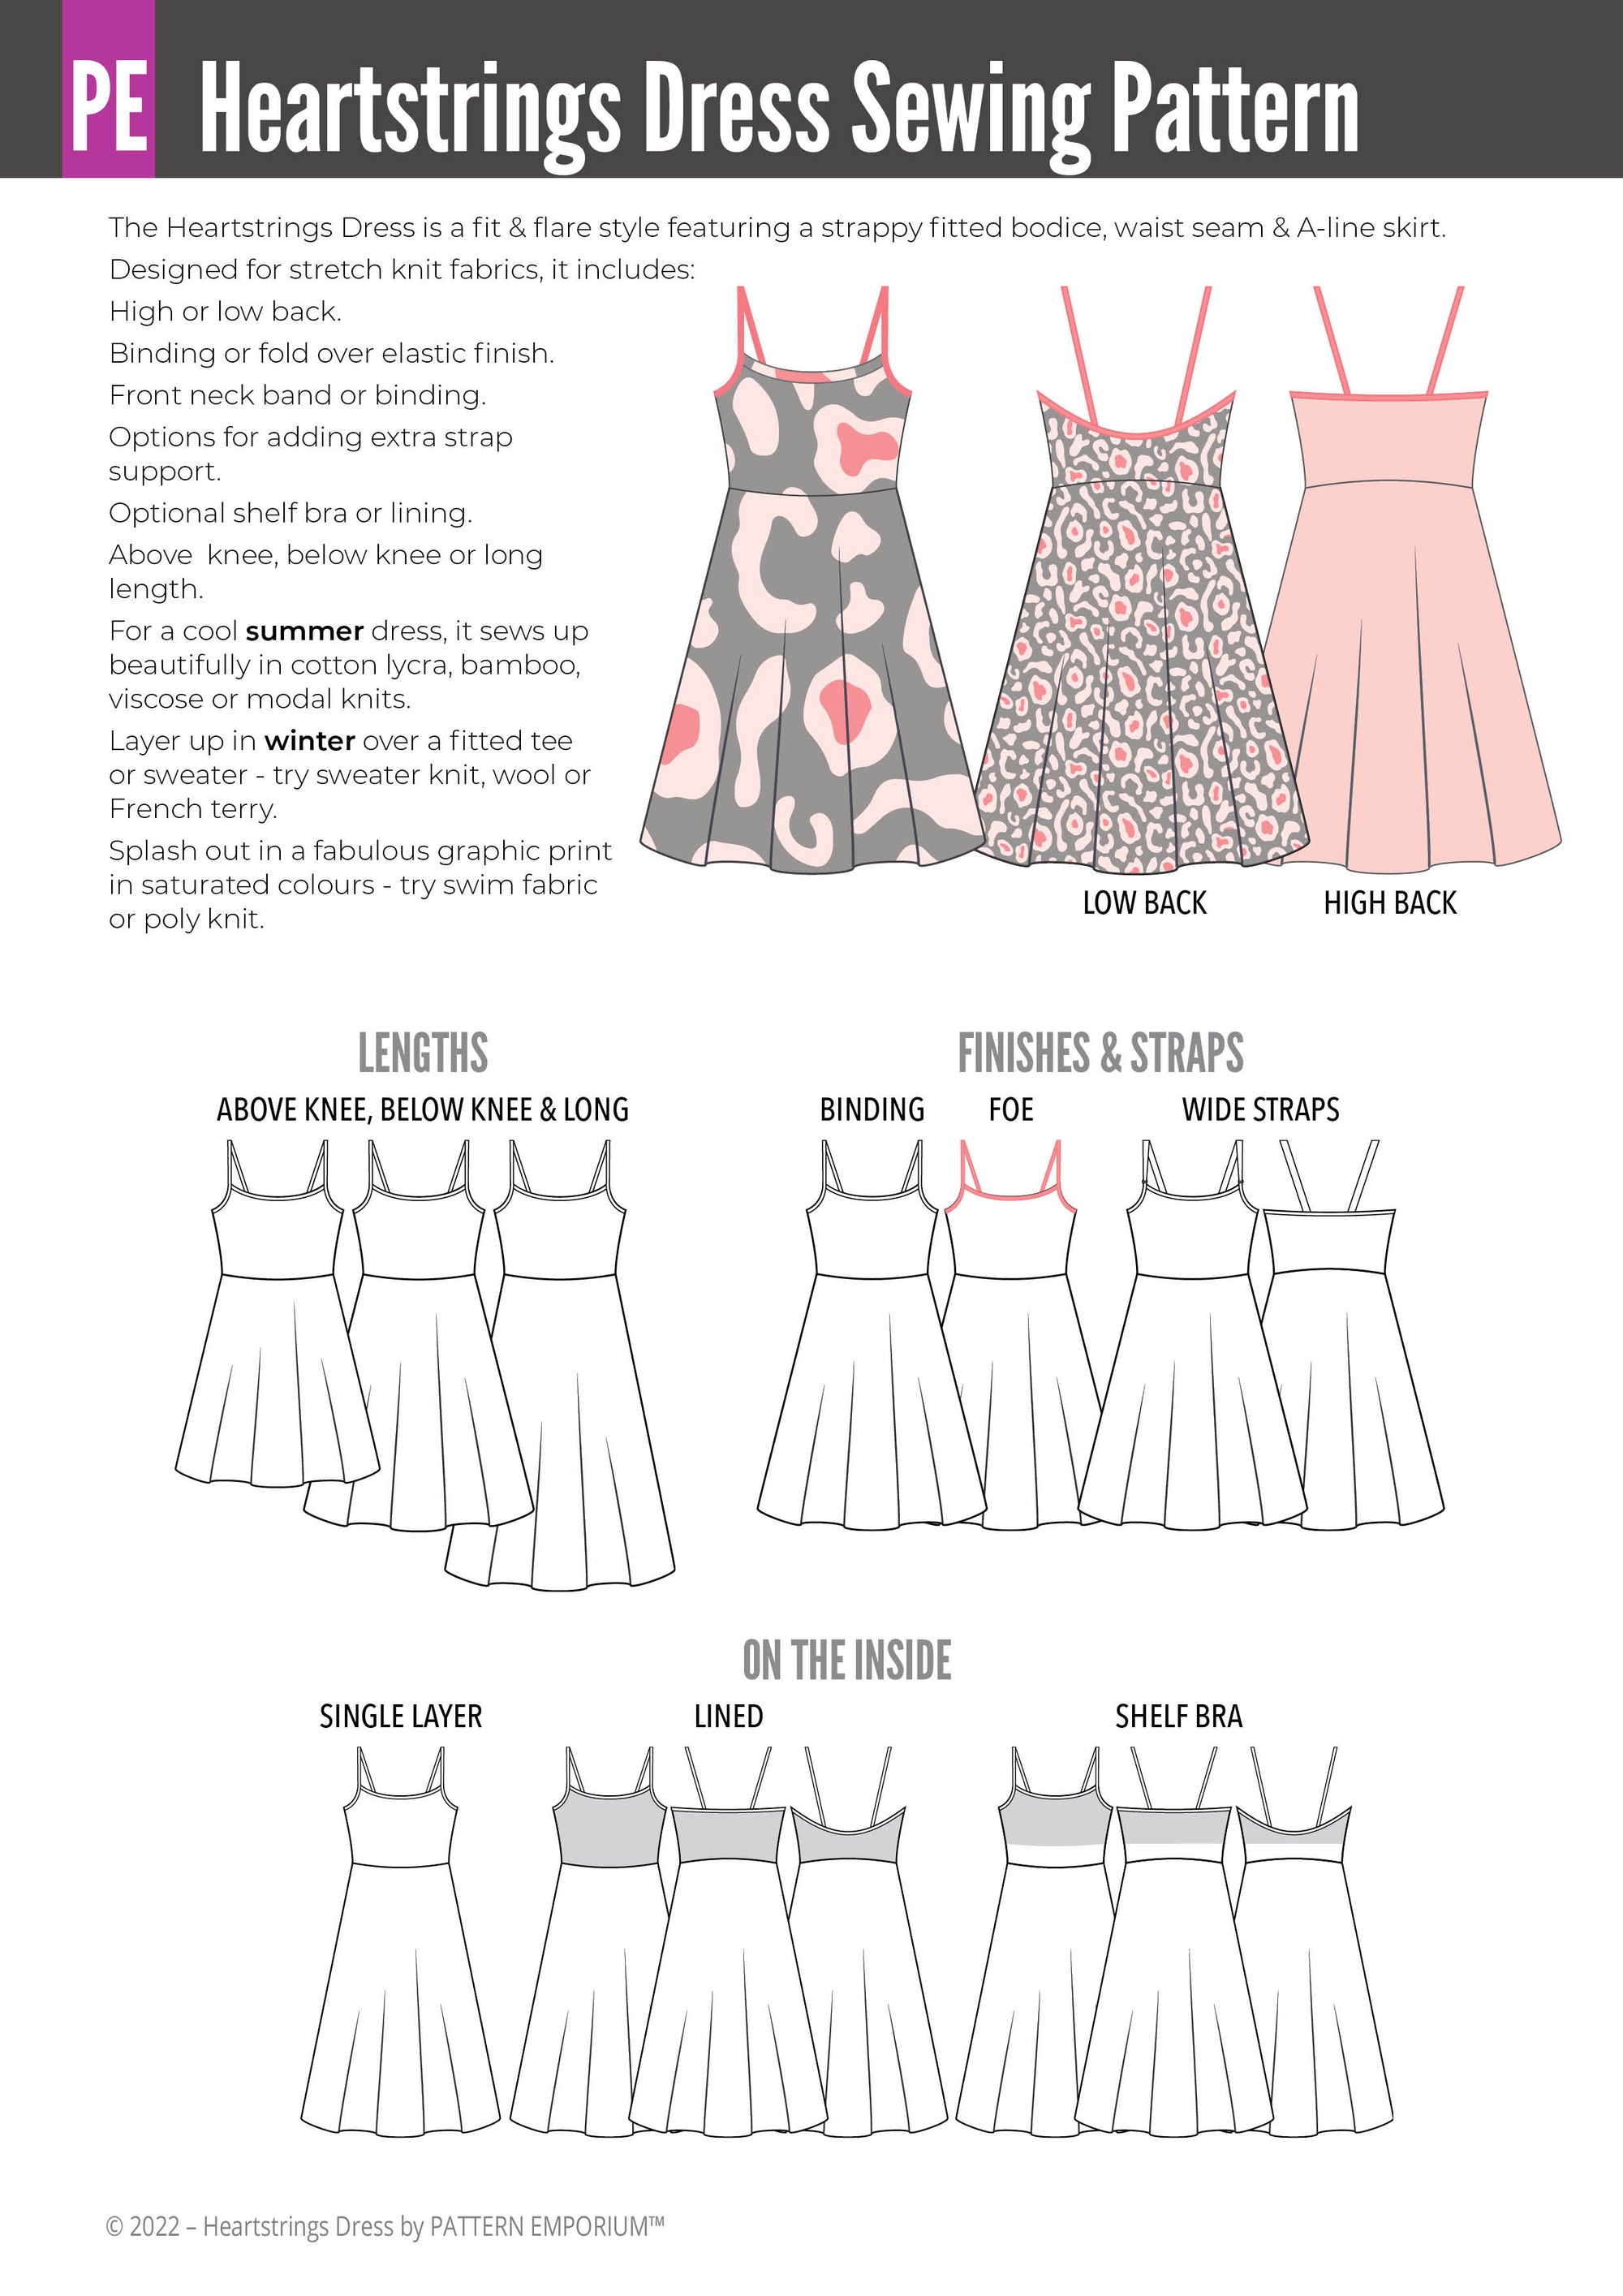 dress template